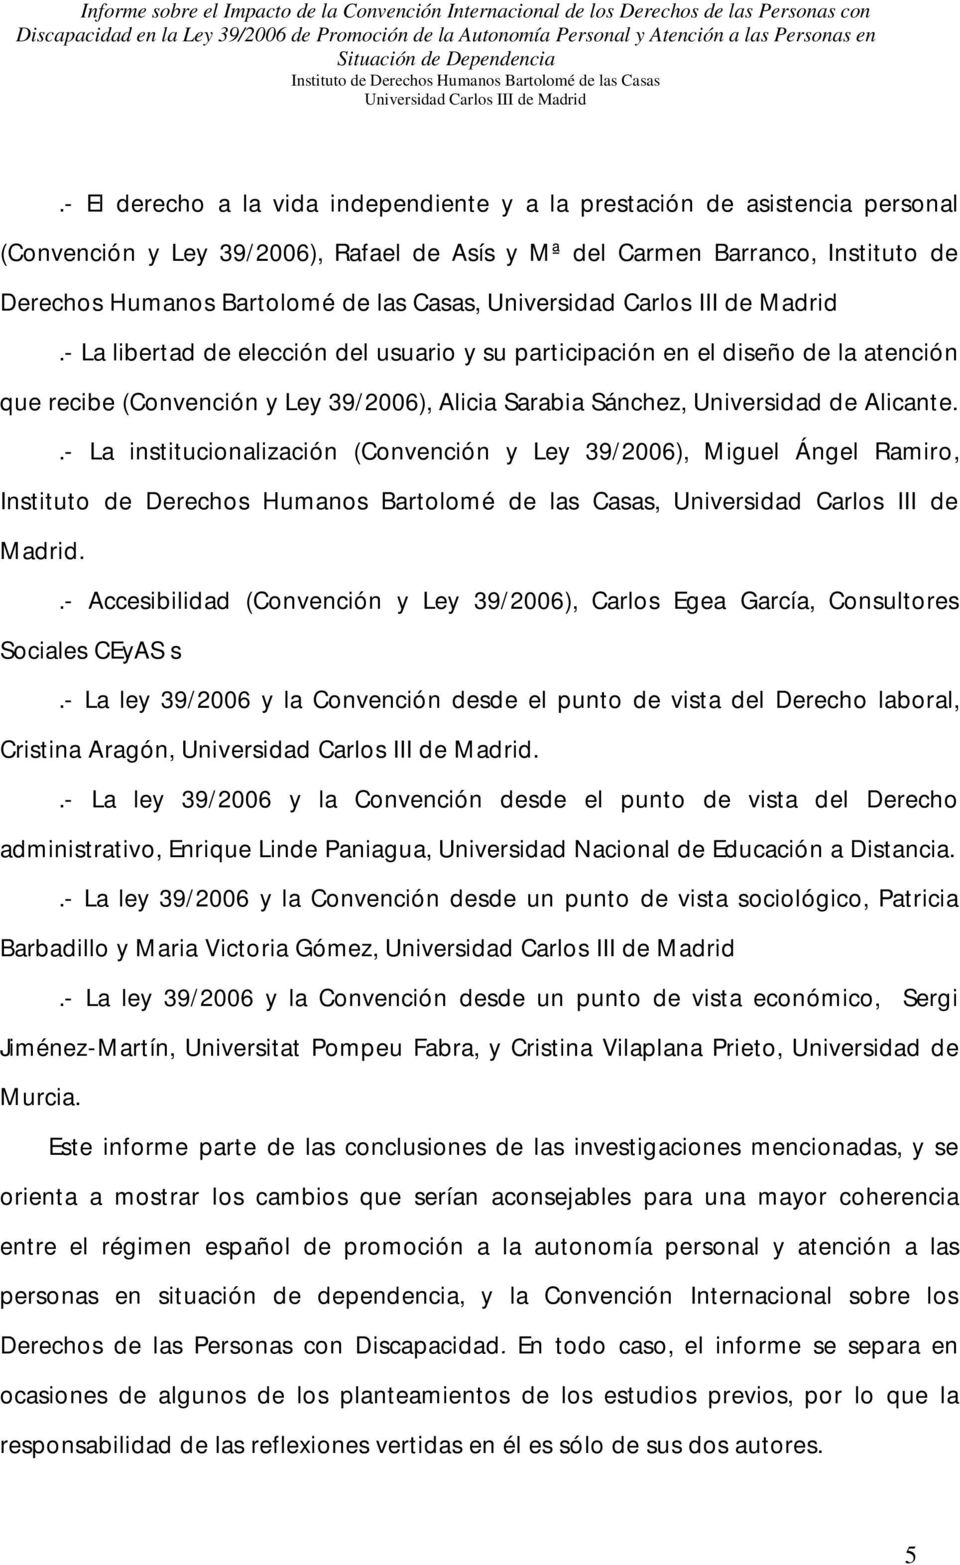 .- La institucionalización (Convención y Ley 39/2006), Miguel Ángel Ramiro,, Universidad Carlos III de Madrid.